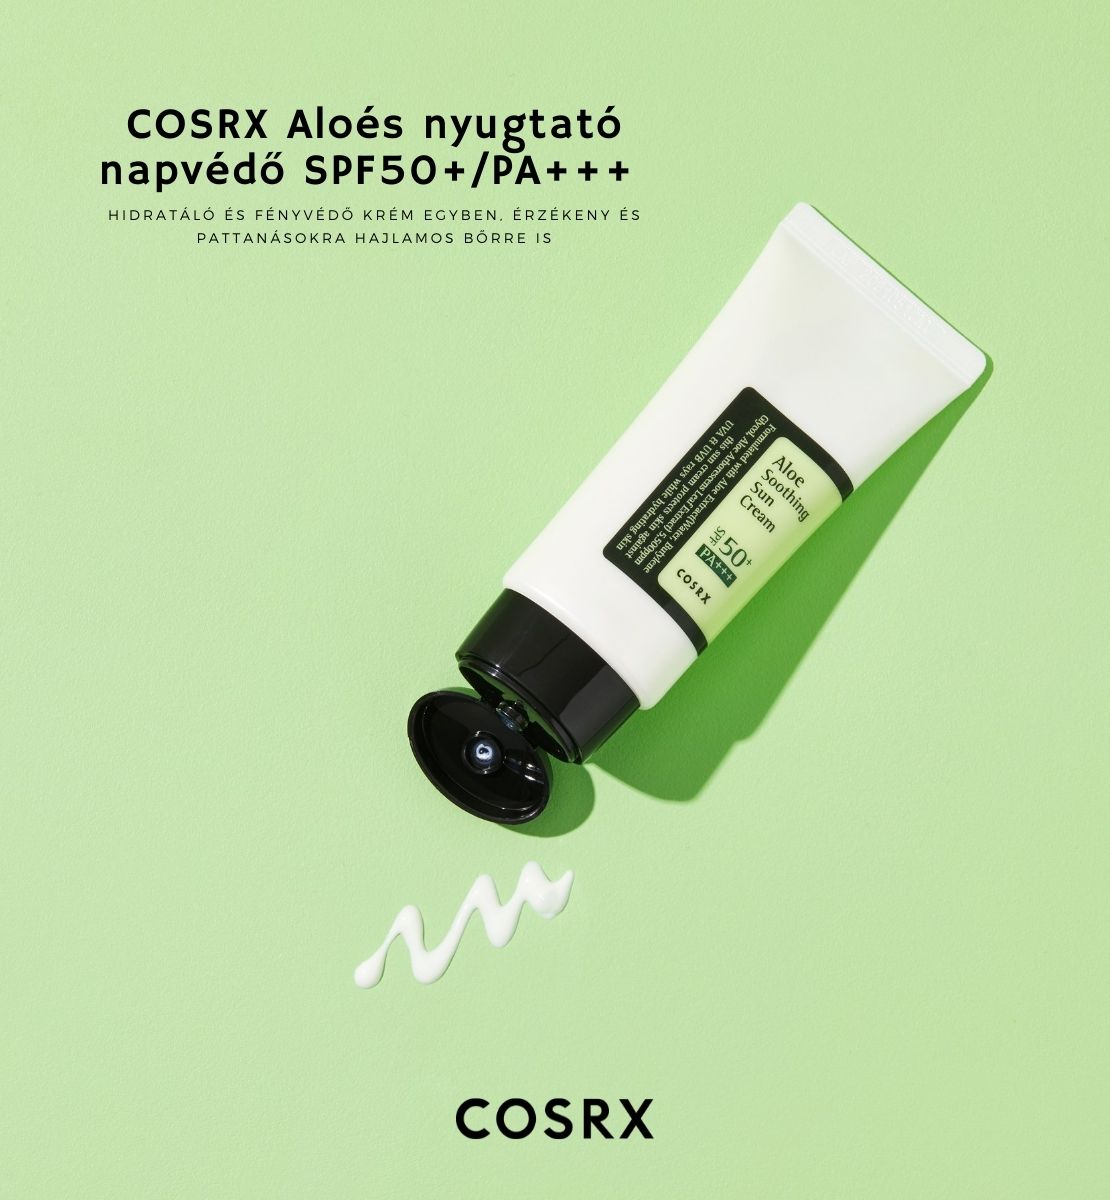 COSRX-Aloes-nyugtato-napvedo-leiras